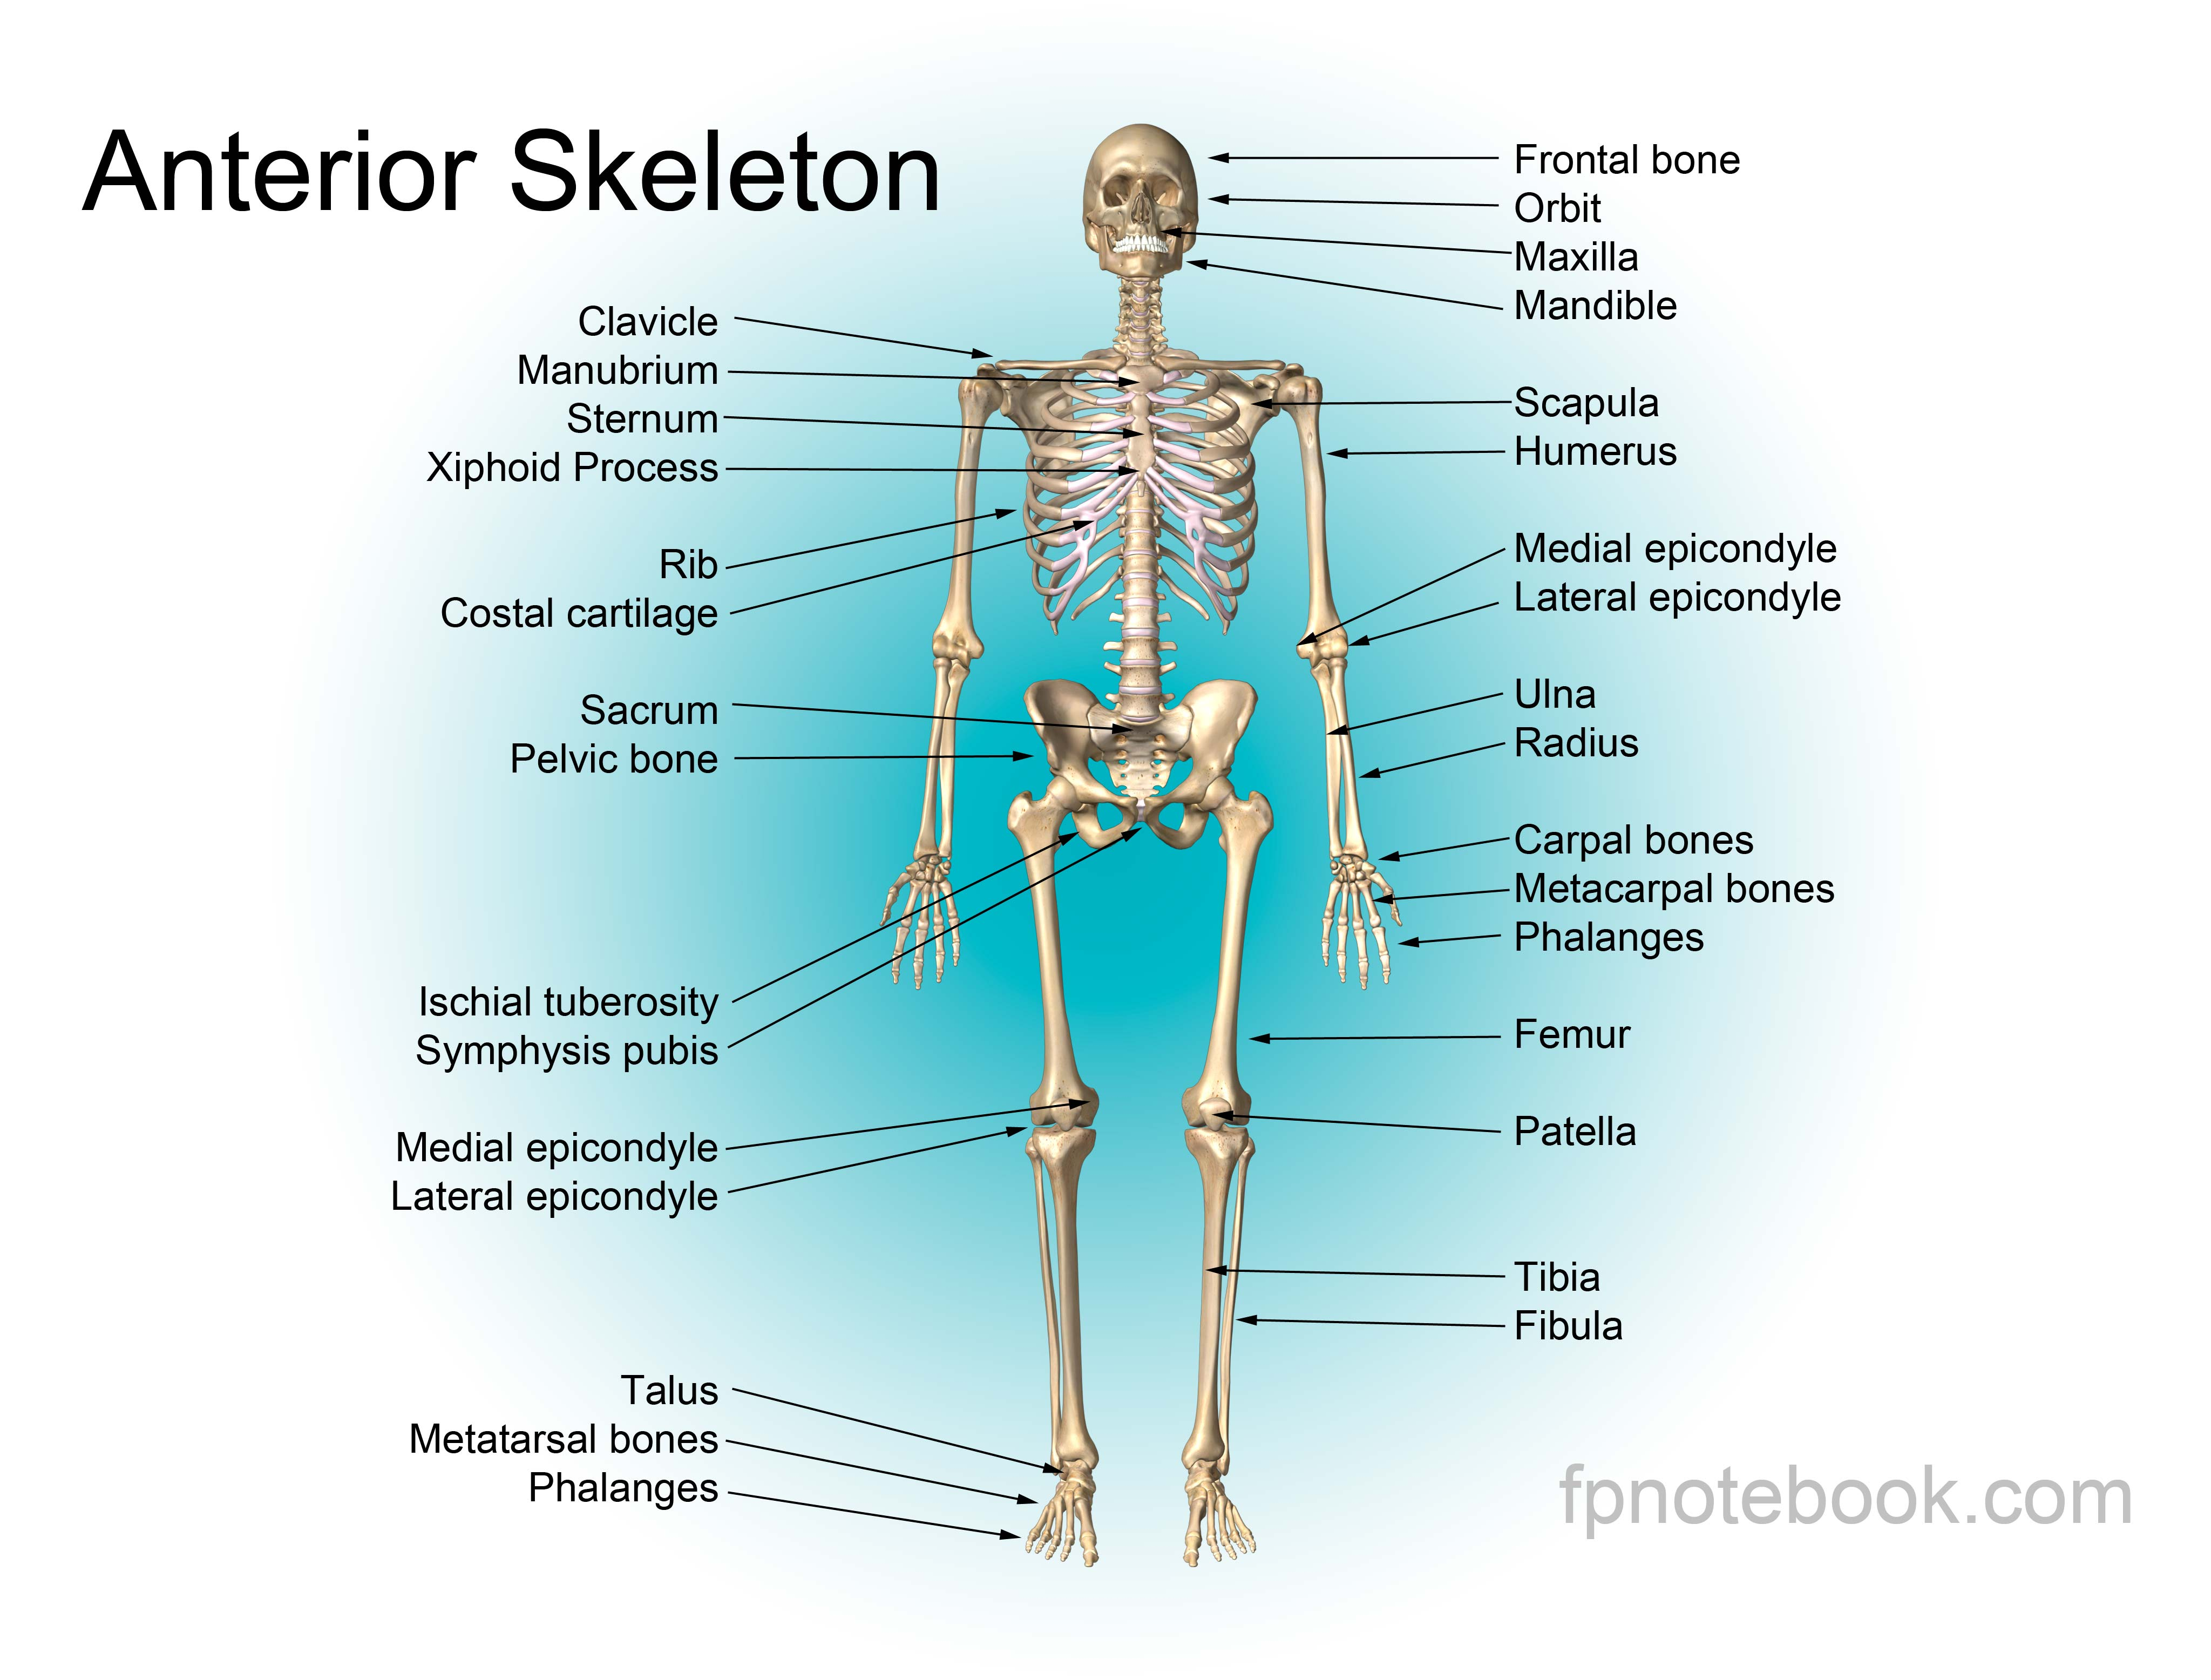 Человек латинское название. Скелет человека анатомия кости на английском. Скелет туловища человека анатомия на латинском. Кости скелета на русском и на латыни. Кости туловища на латинском анатомия.